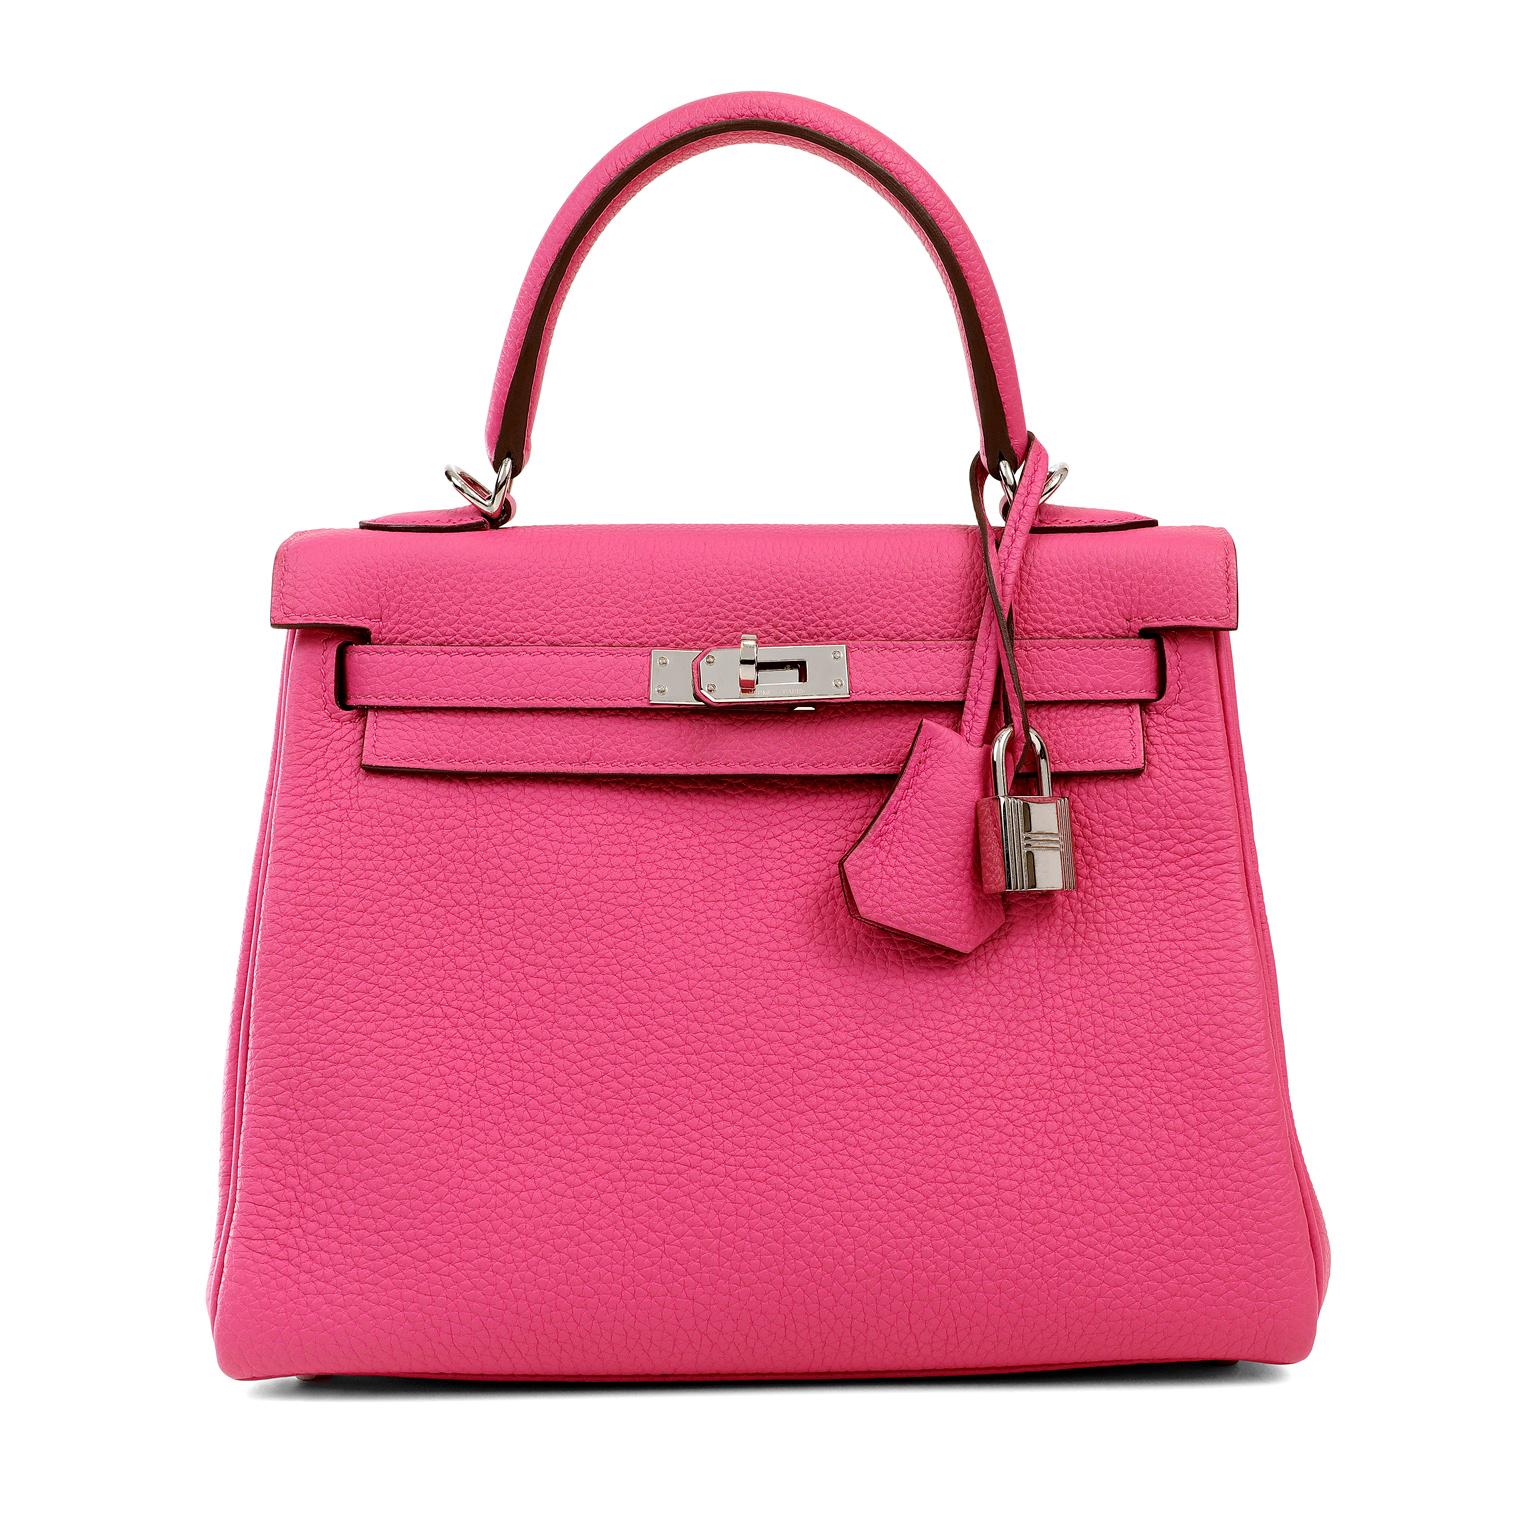 Cet authentique Hermès Pink Magnolia Togo 25 cm Kelly est en parfait état.   Les sacs Hermès sont considérés comme l'article de luxe par excellence dans le monde entier.  Chaque pièce est fabriquée à la main, avec des listes d'attente qui peuvent